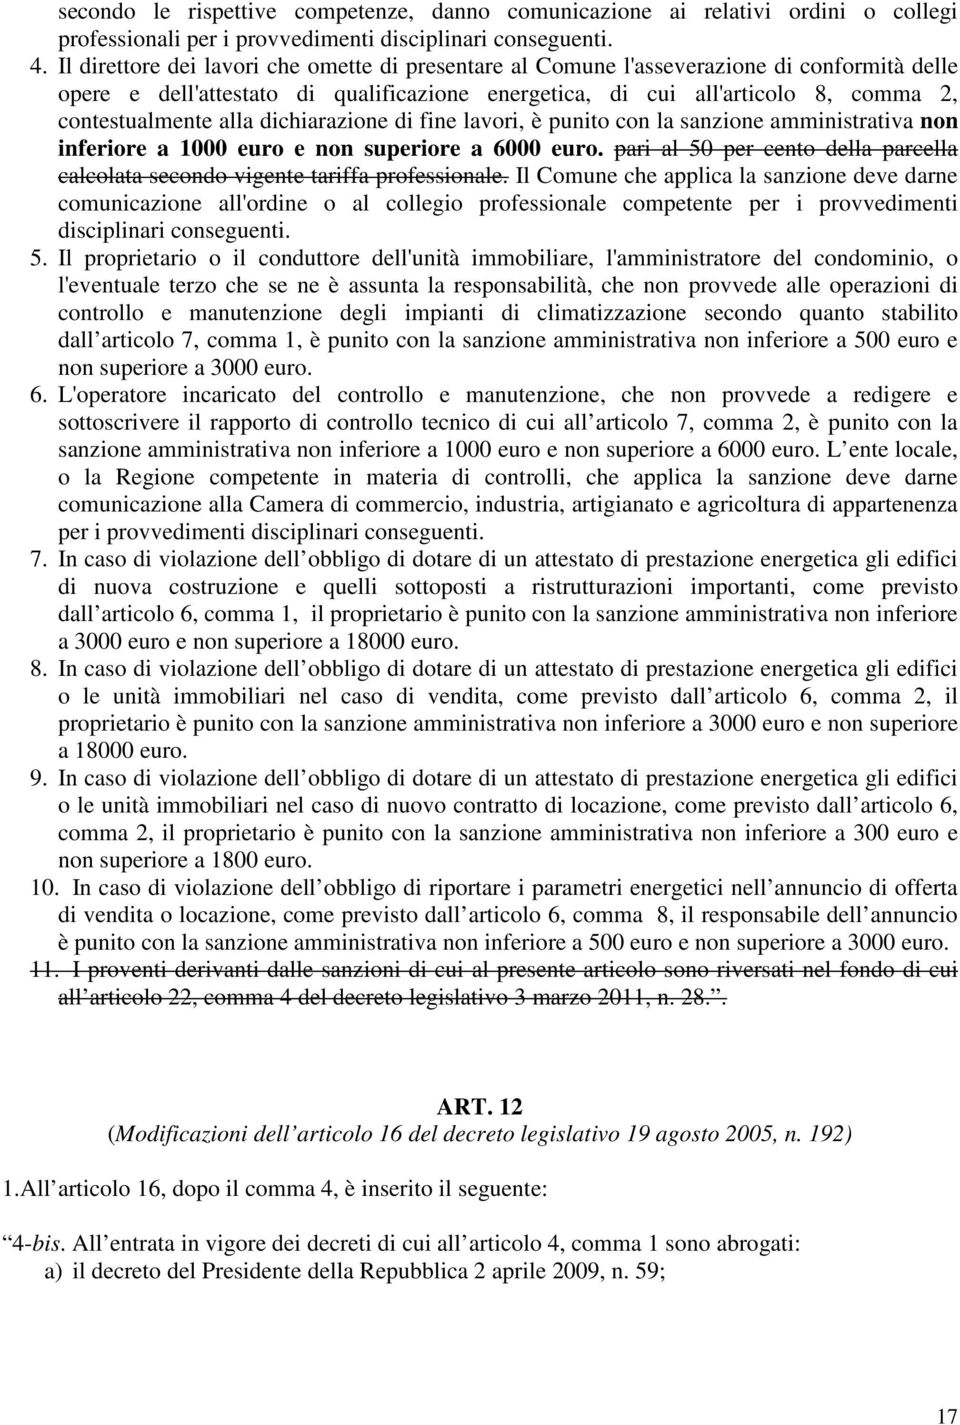 alla dichiarazione di fine lavori, è punito con la sanzione amministrativa non inferiore a 1000 euro e non superiore a 6000 euro.